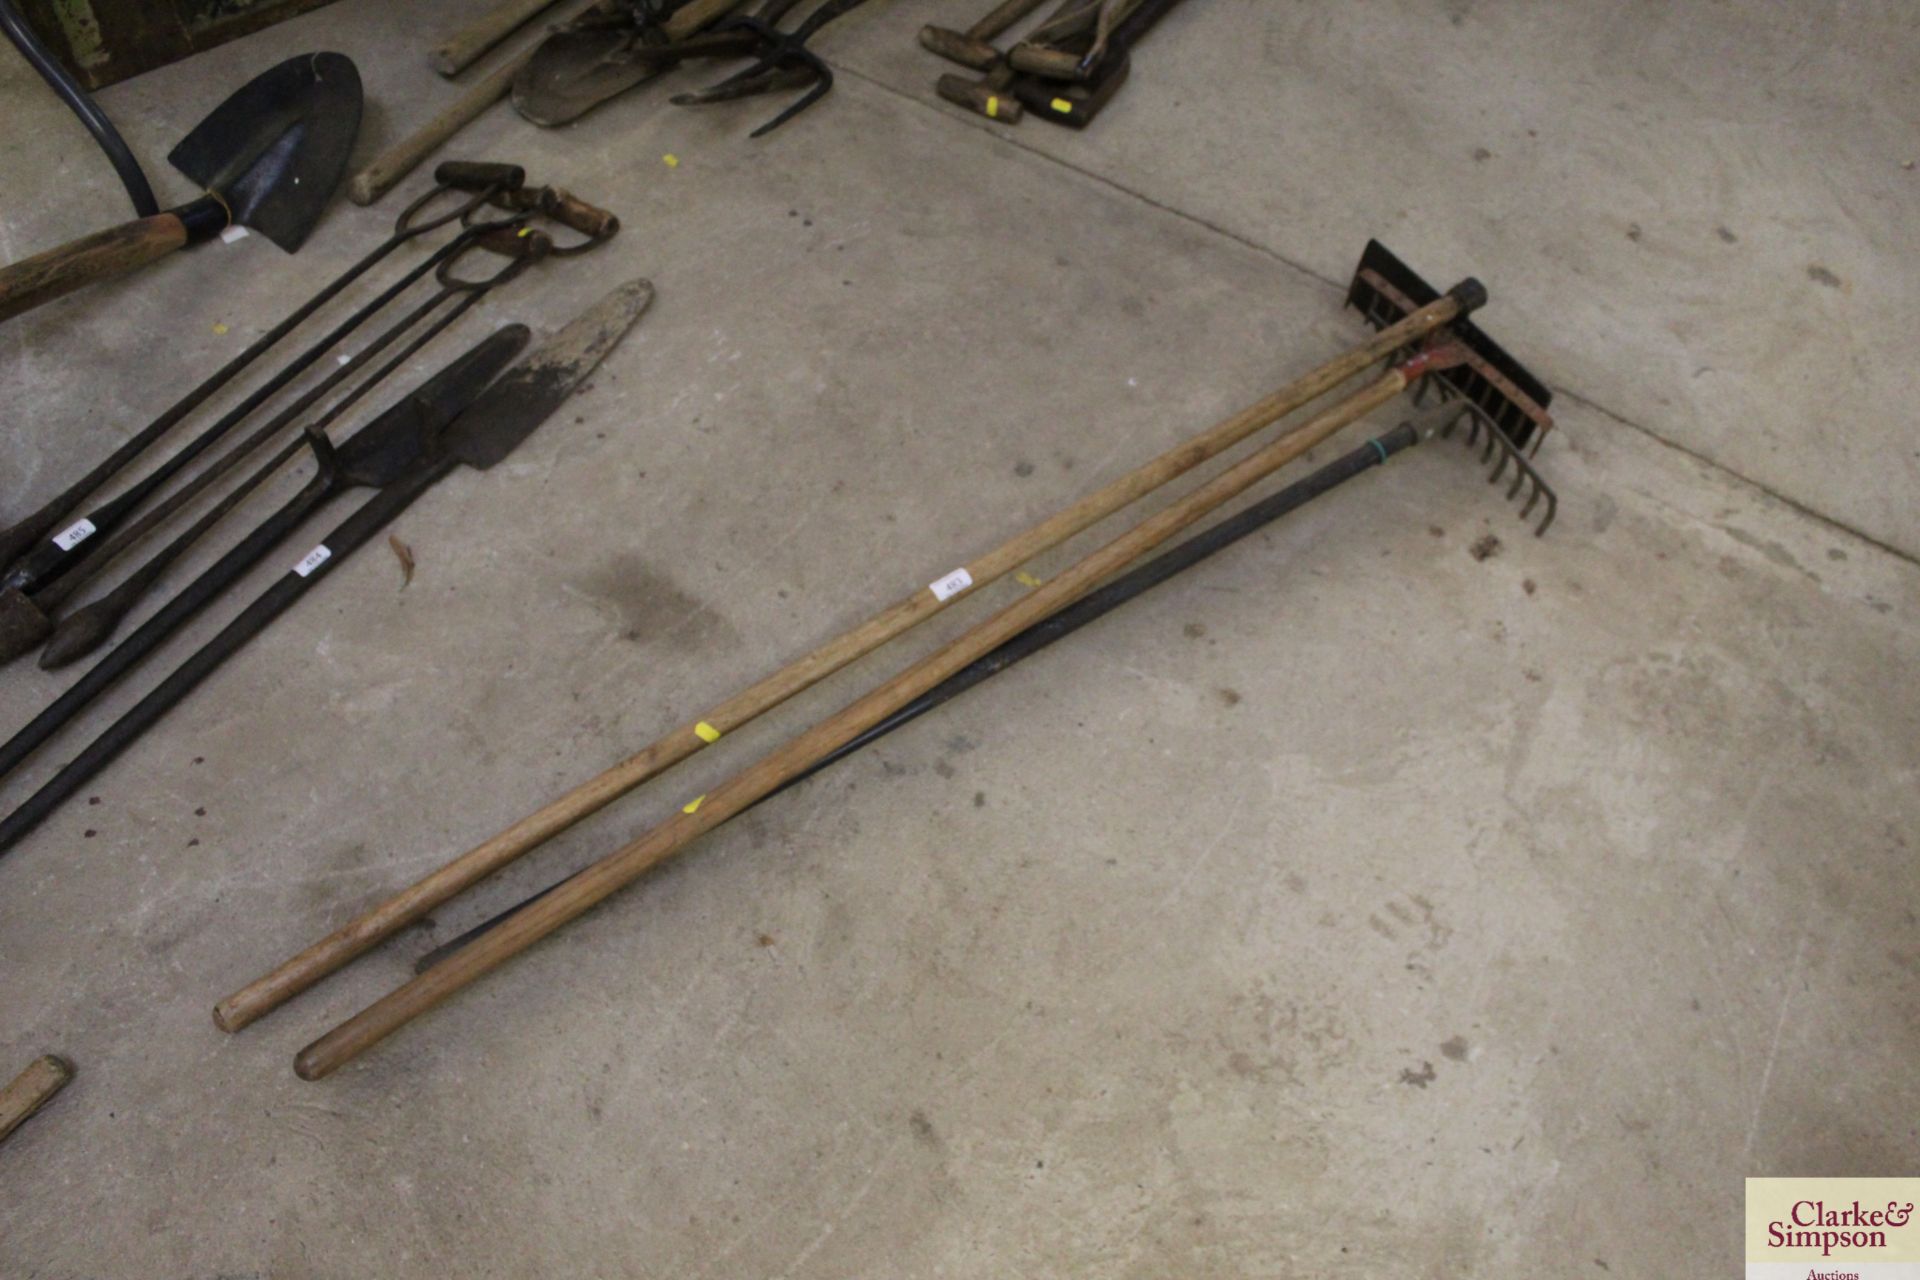 A quantity of rakes and a scraper